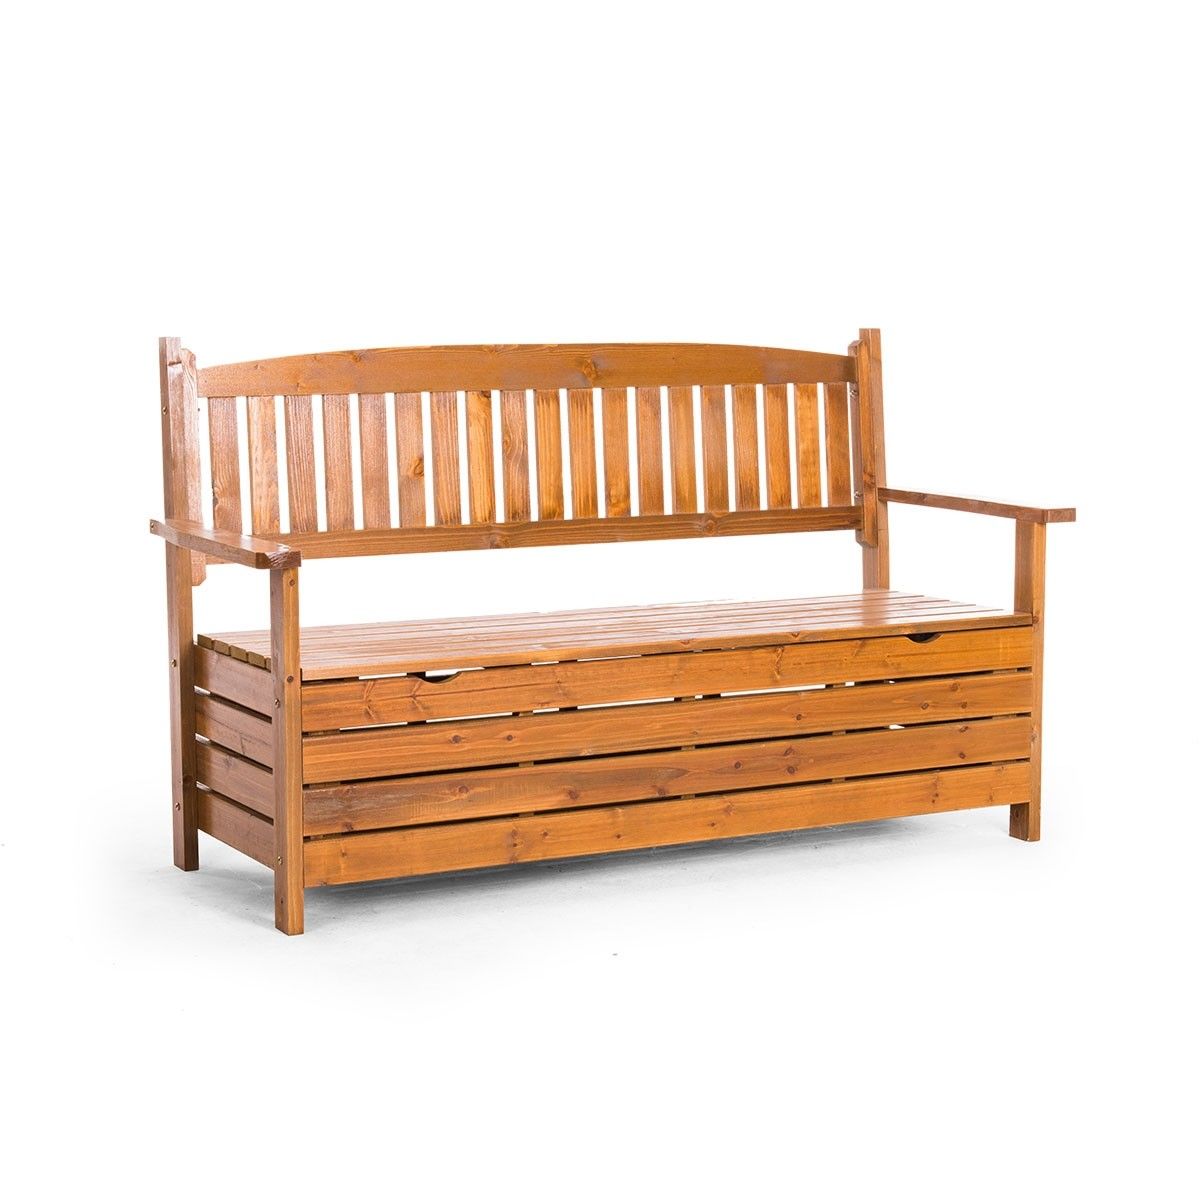 1 5m Wooden Storage Bench Garden Chest Buy Outdoor Benches 363823